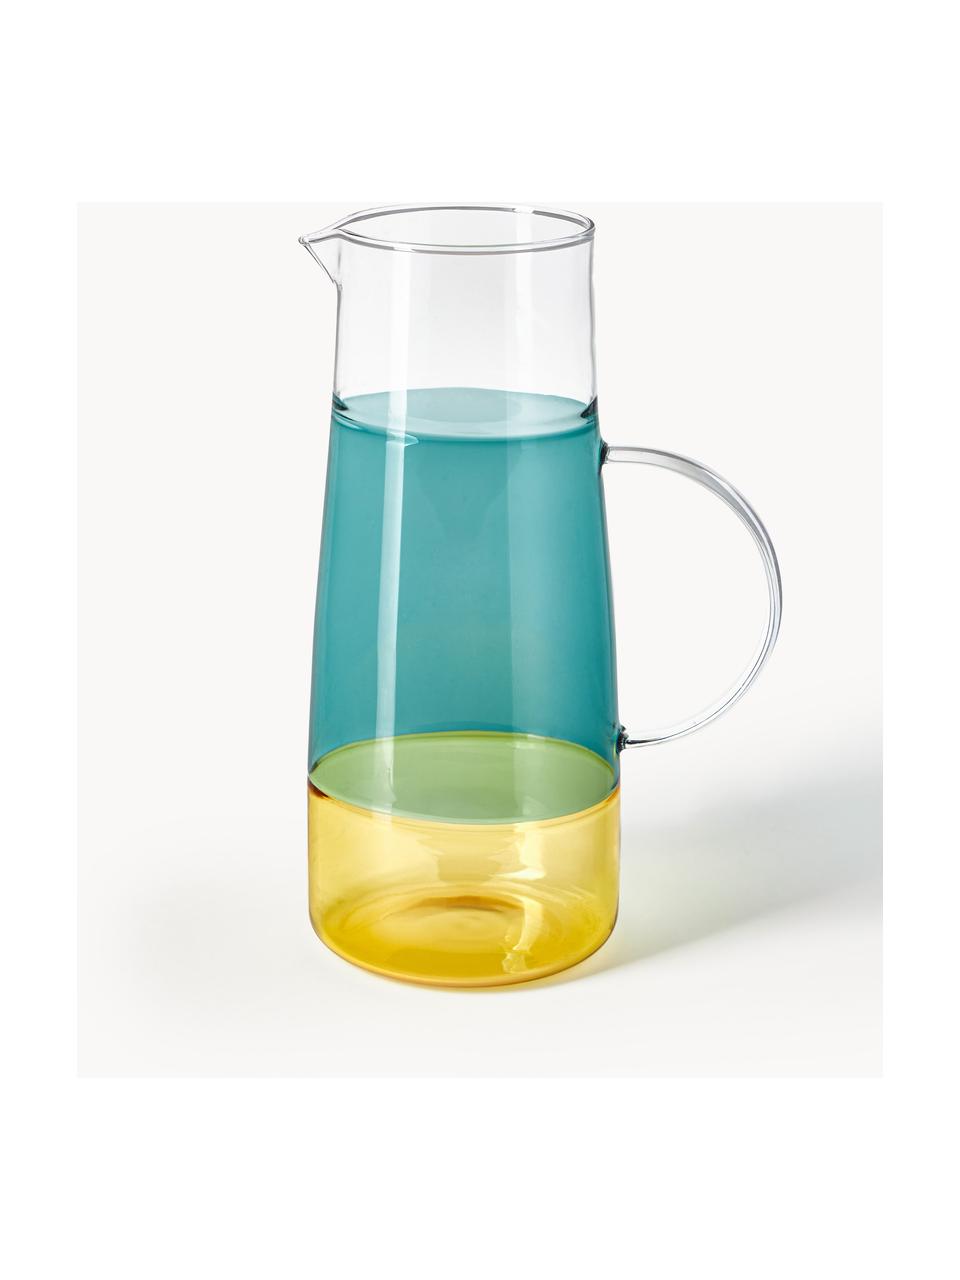 Mundgeblasener Krug Lemonade, 1.3 L, Glas, Dunkelgrün, Gelb, 1.3 L